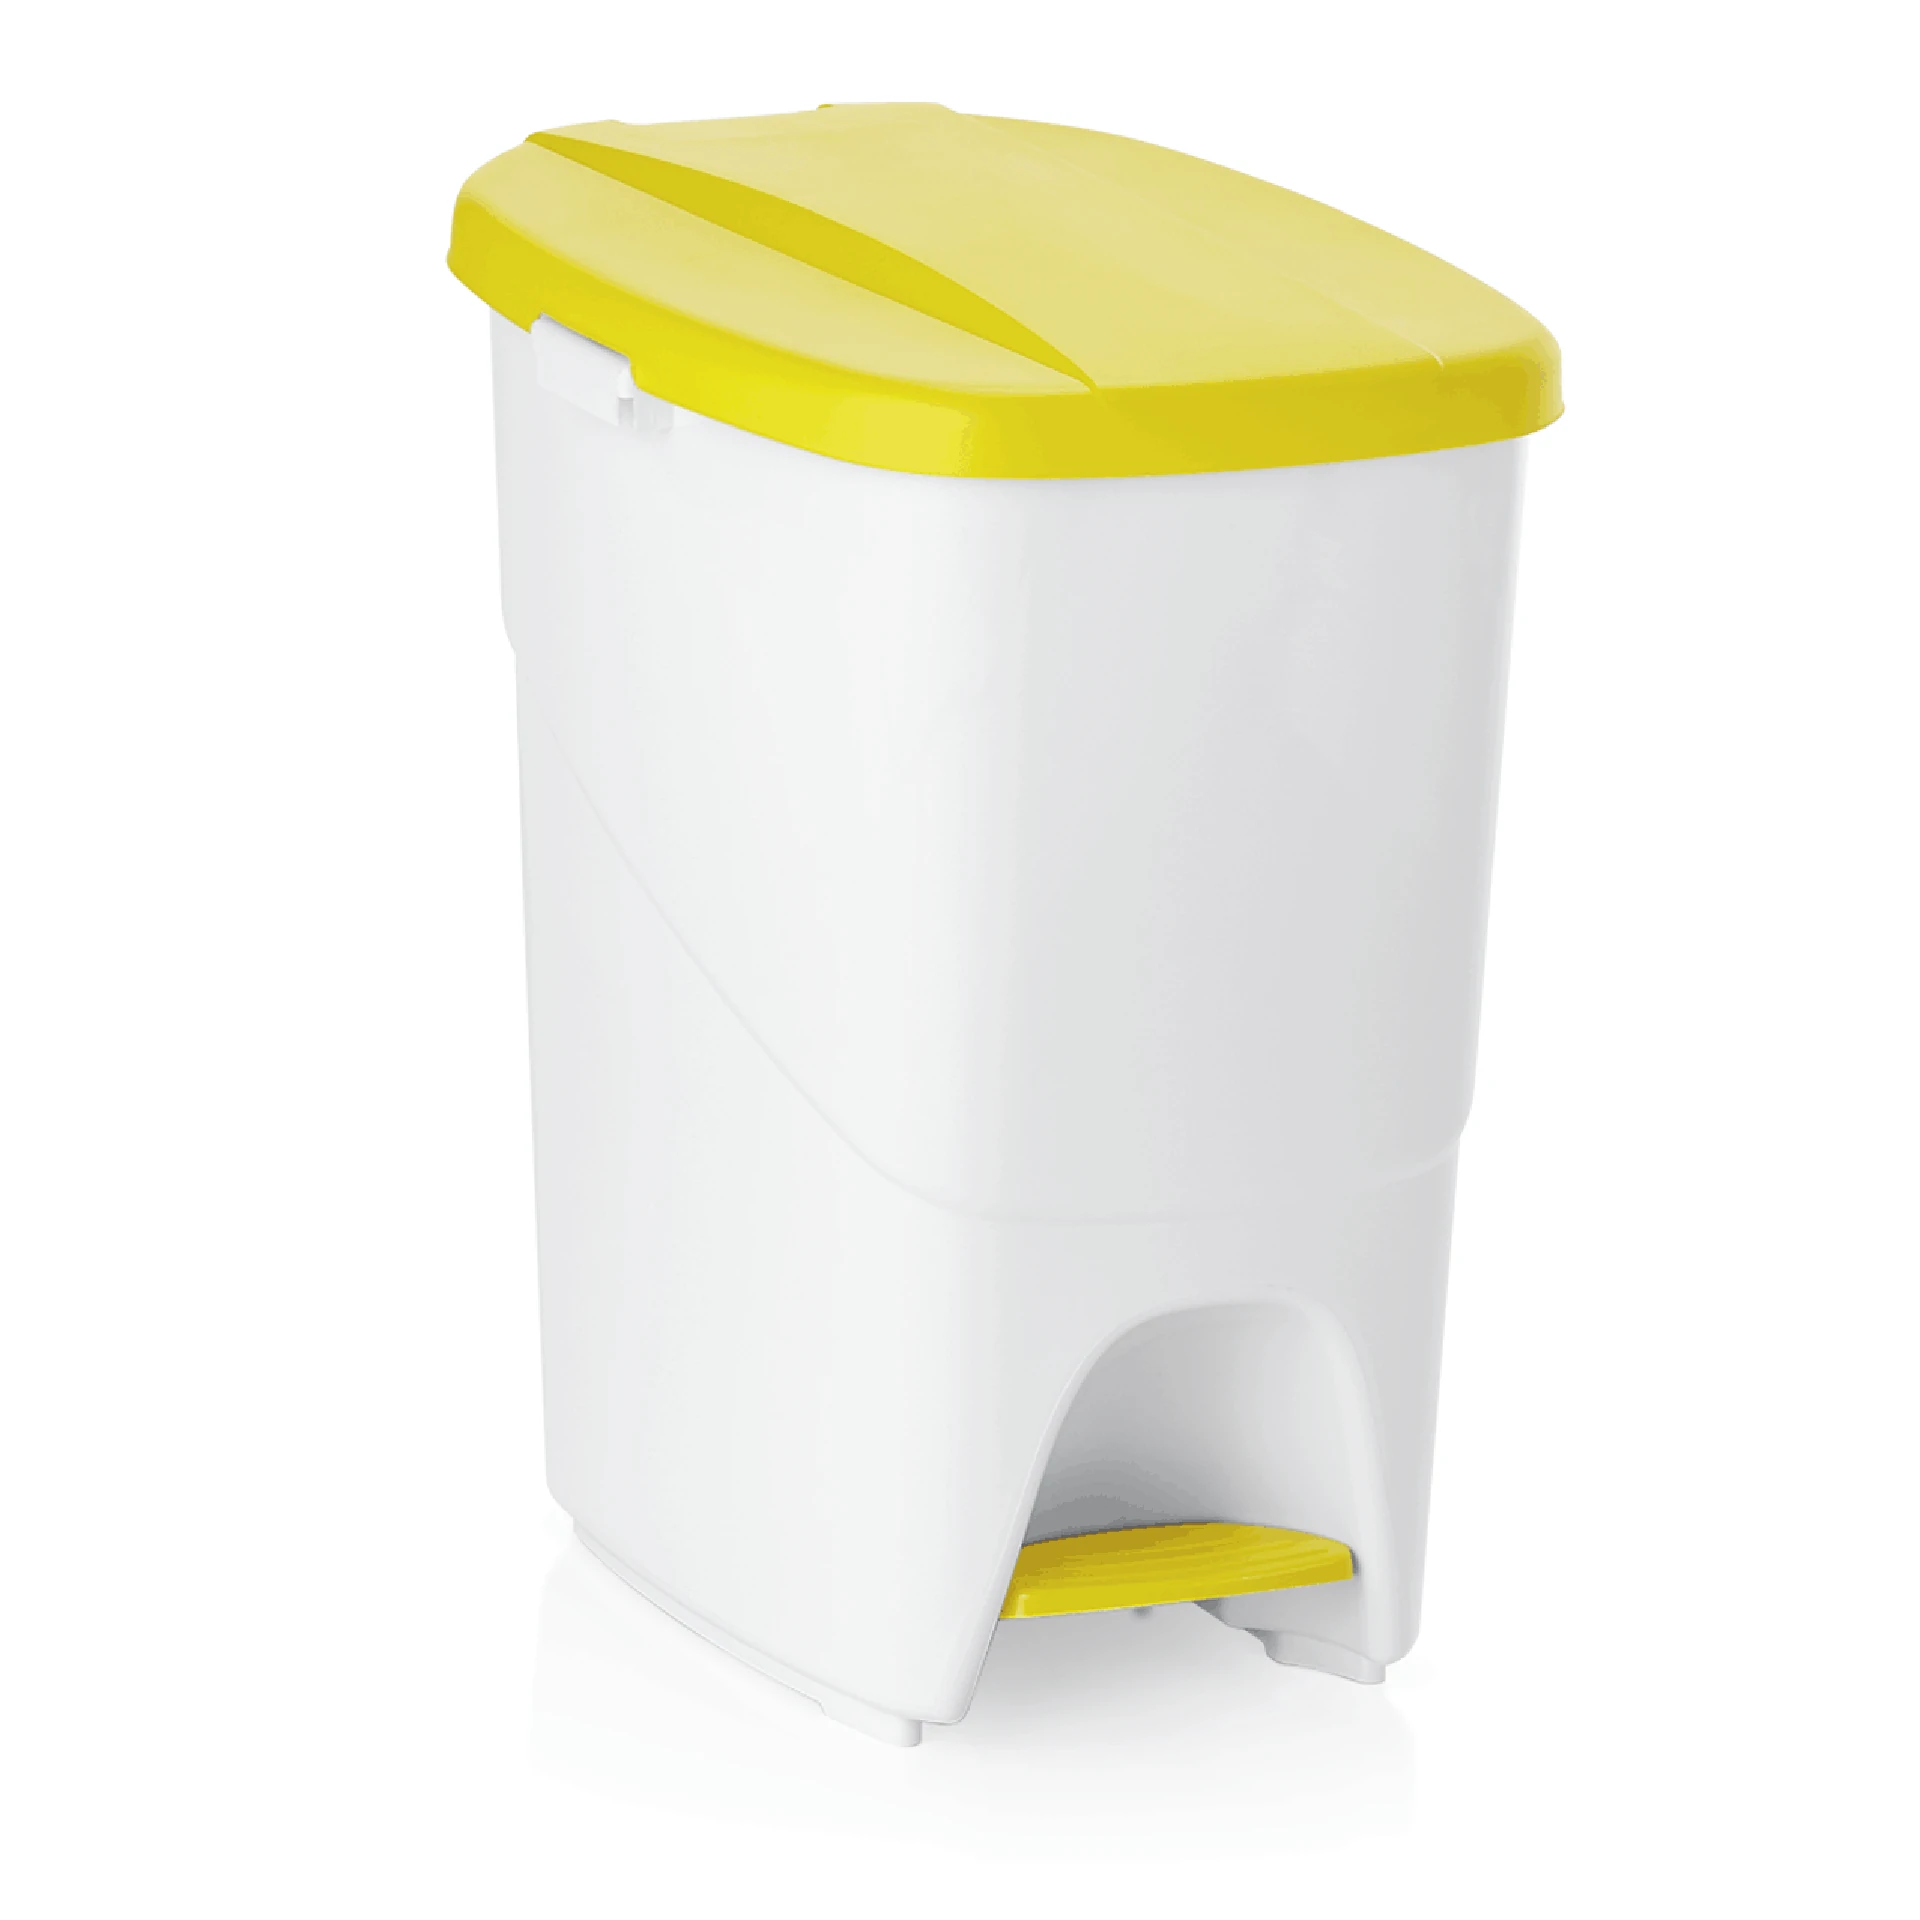 Pedal waste bin Yellow